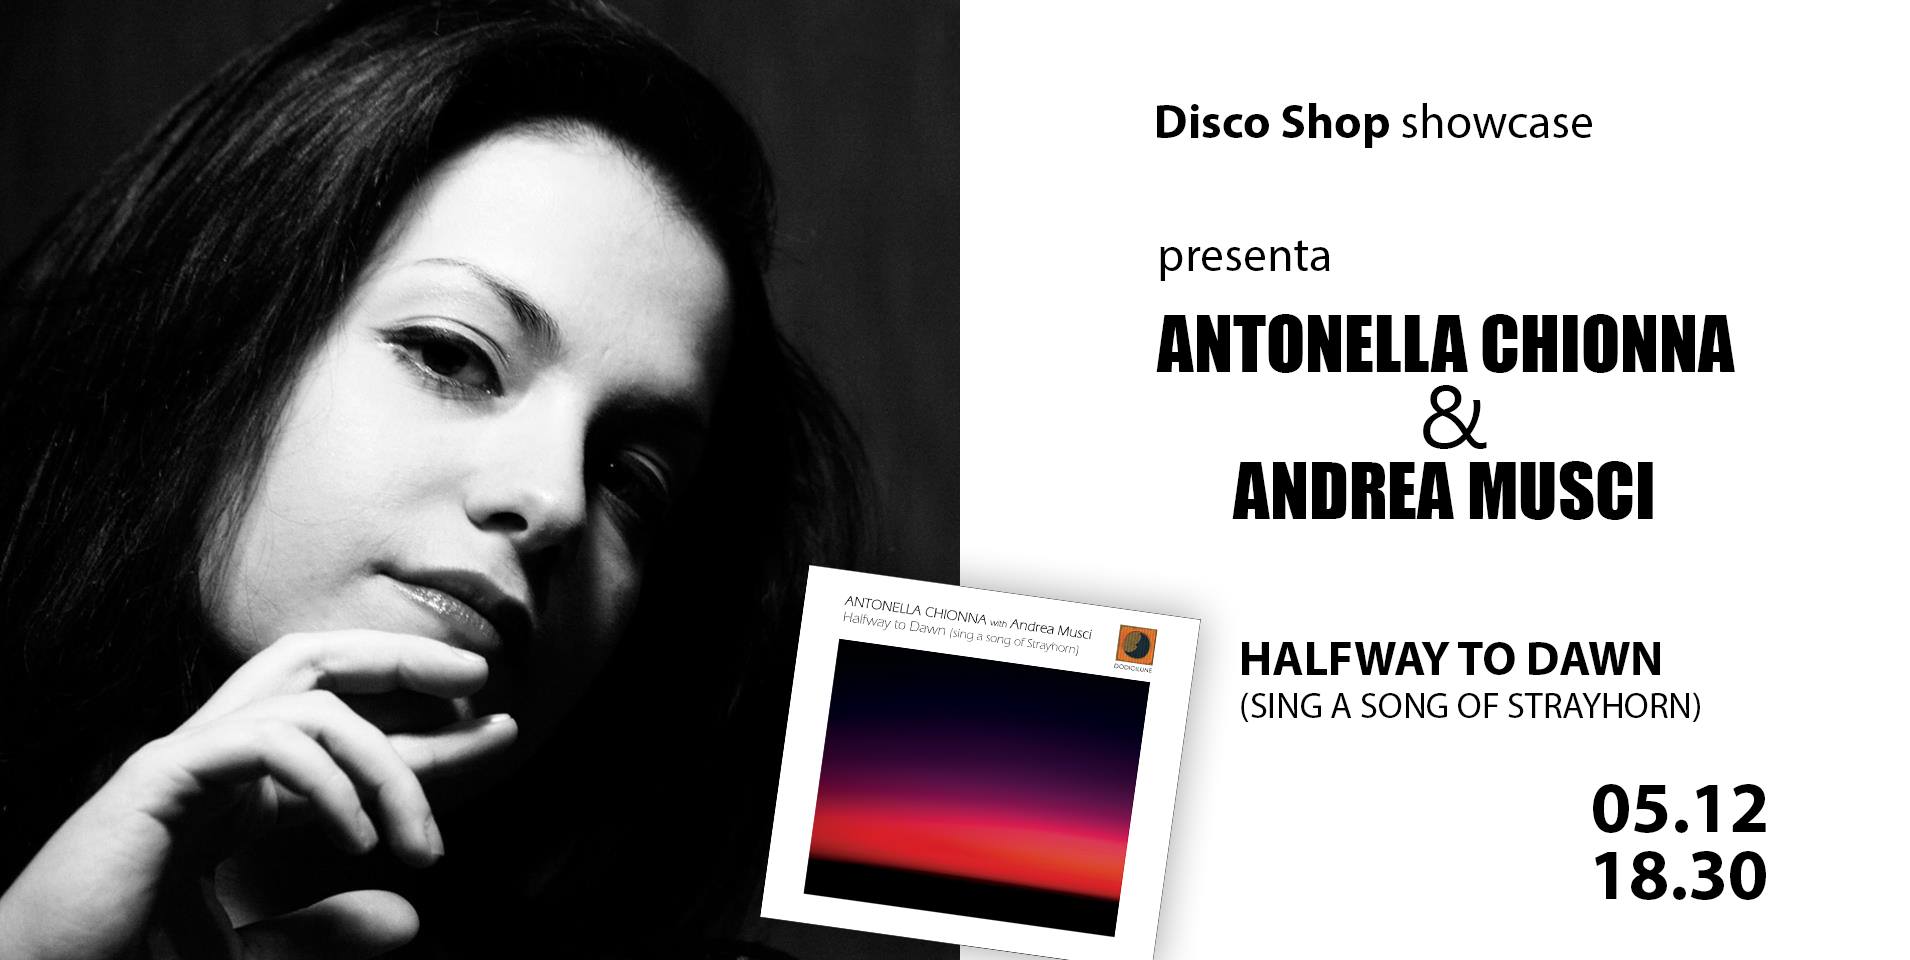 ... showcase e presenta in anteprima Halfway To Dawn (sing a song of Strayhorn) nuovo album della cantante Antonella Chionna e del chitarrista Andrea Musci ... - 144619.jpg.orig